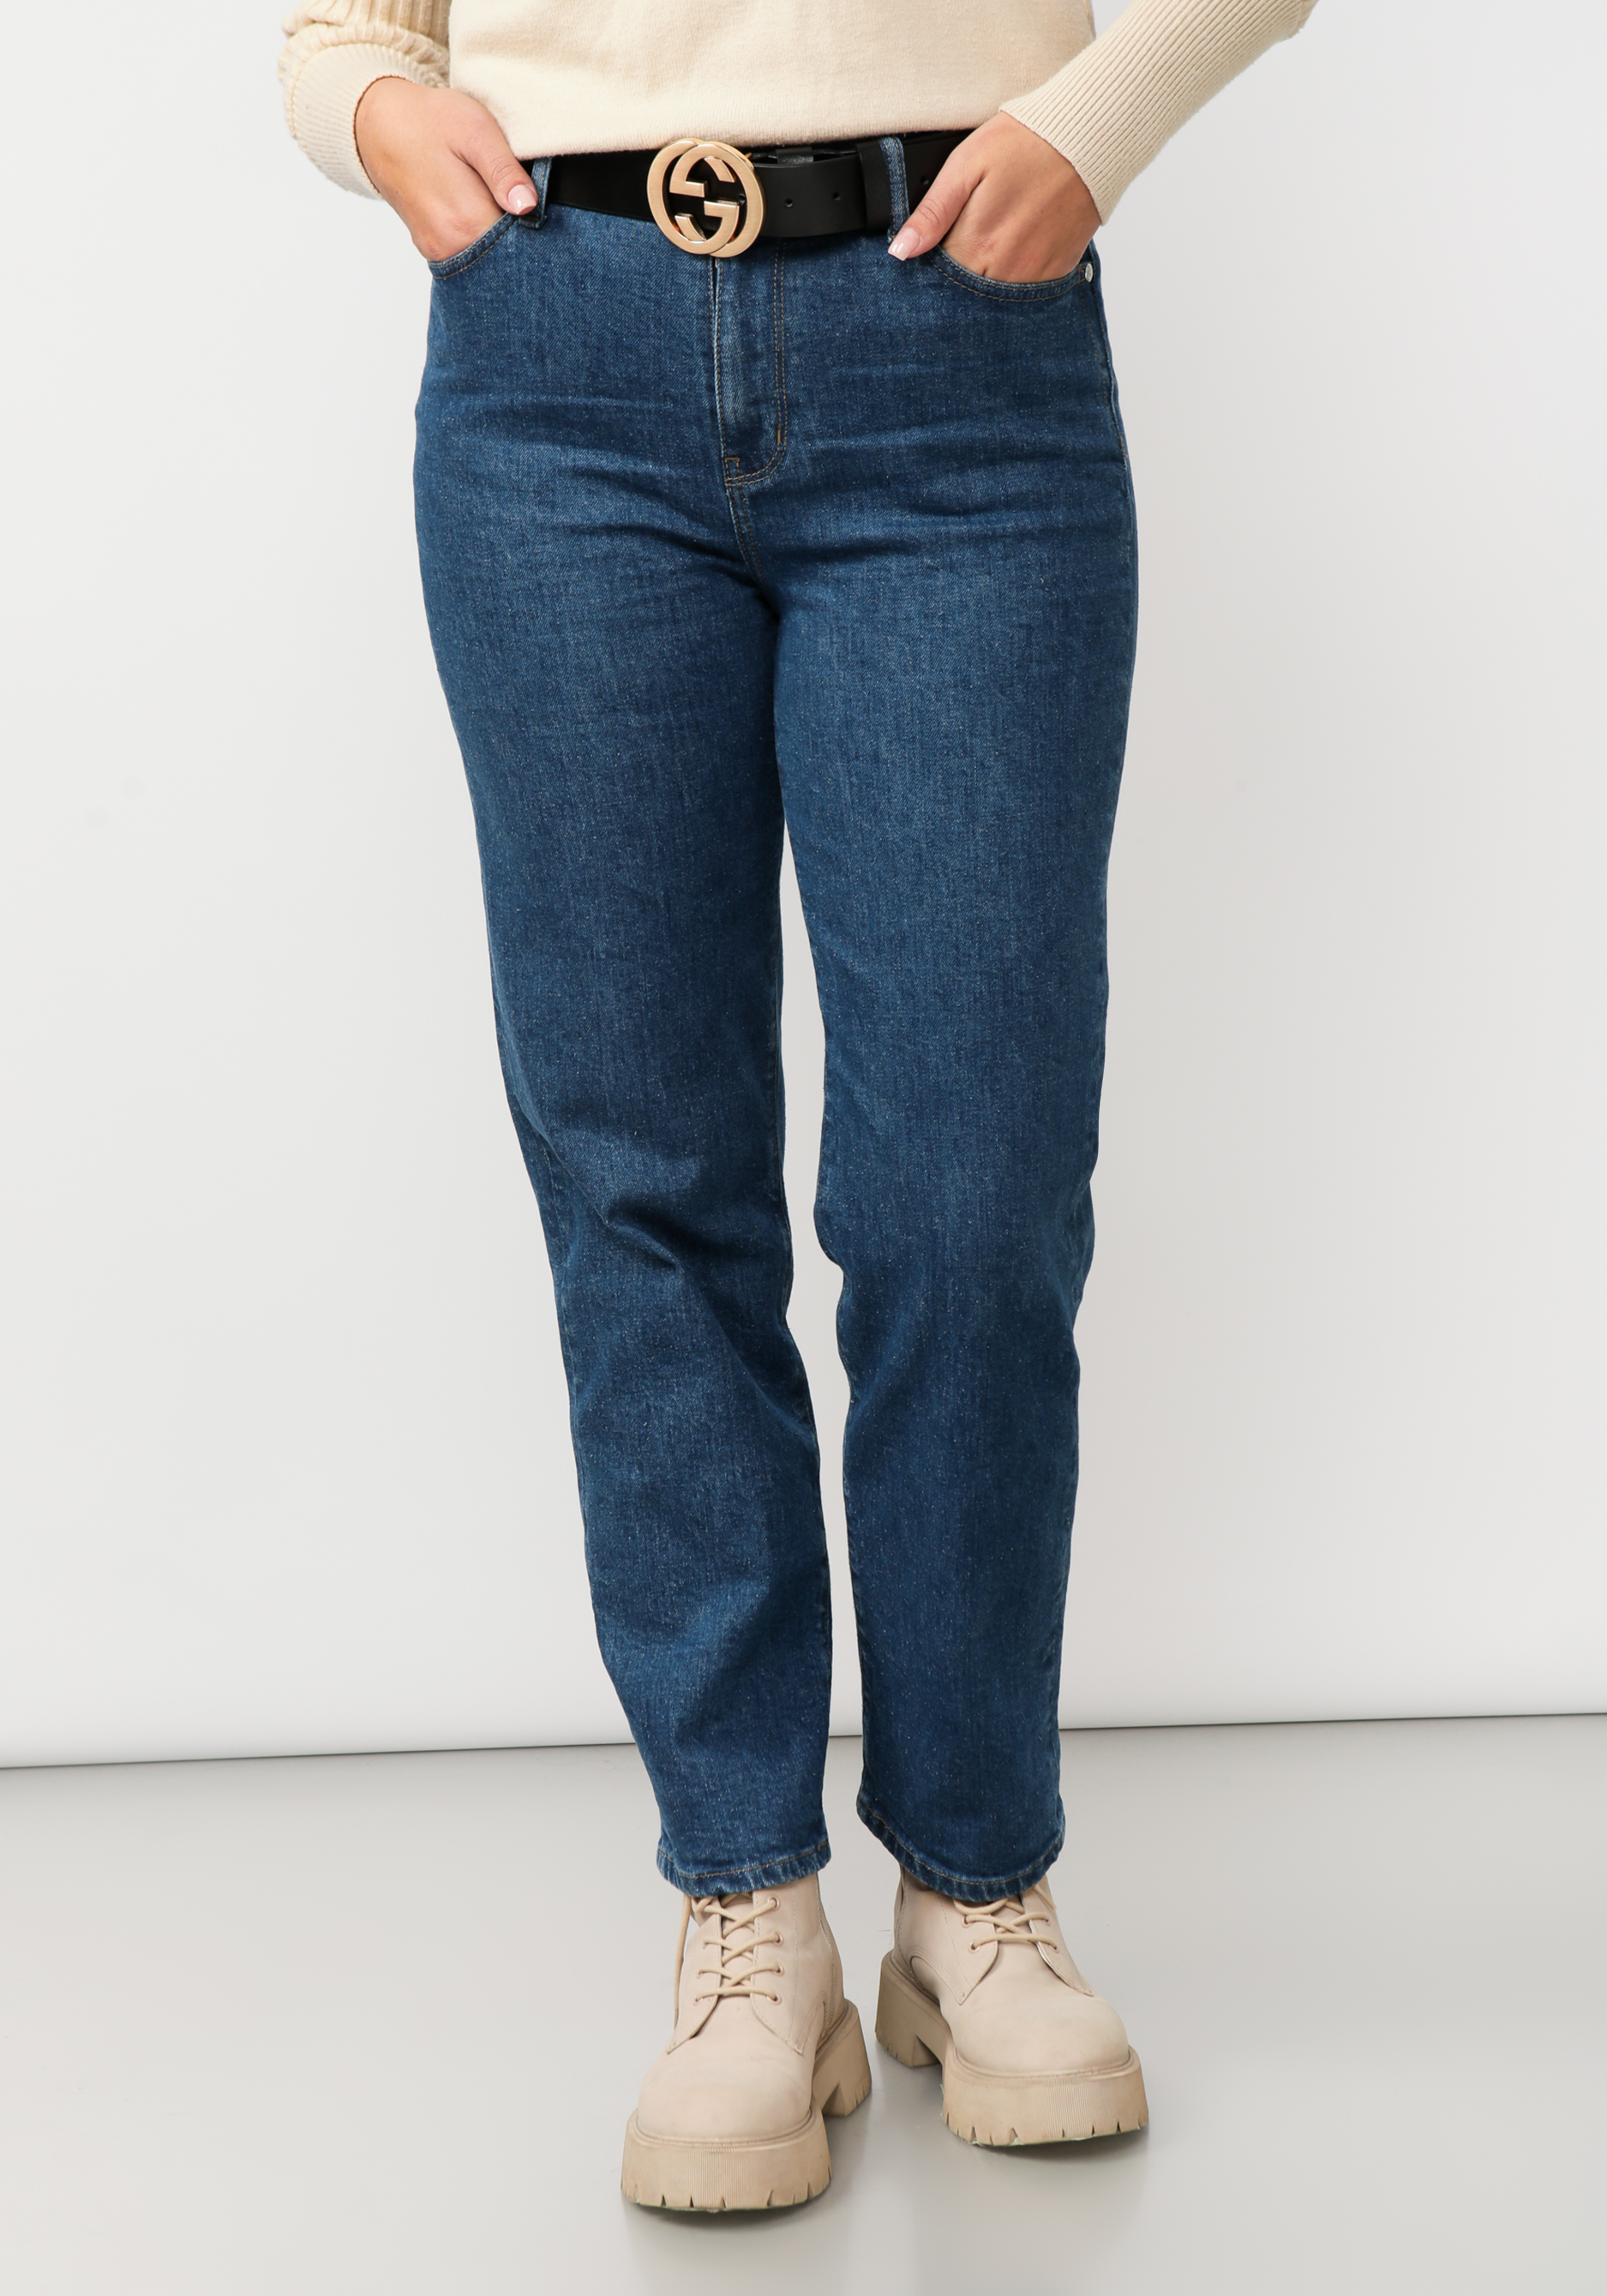 Джинсы прямого кроя с вышивкой на кармане джинсы прямого кроя с комфортным поясом